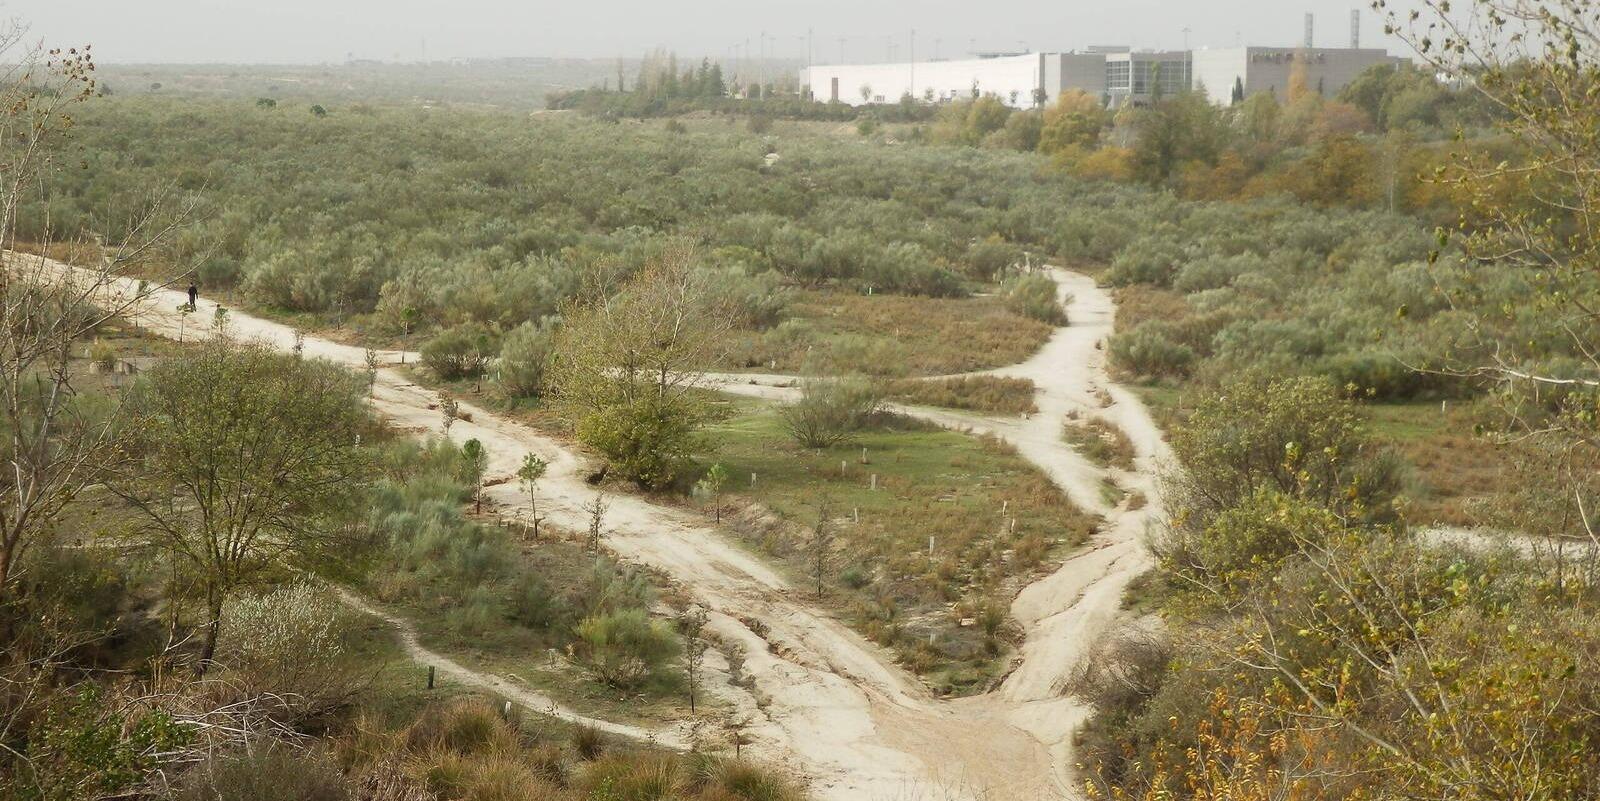 La Comunidad de Madrid crea un nuevo corredor ecológico de biodiversidad en el entorno del Arroyo Valchico